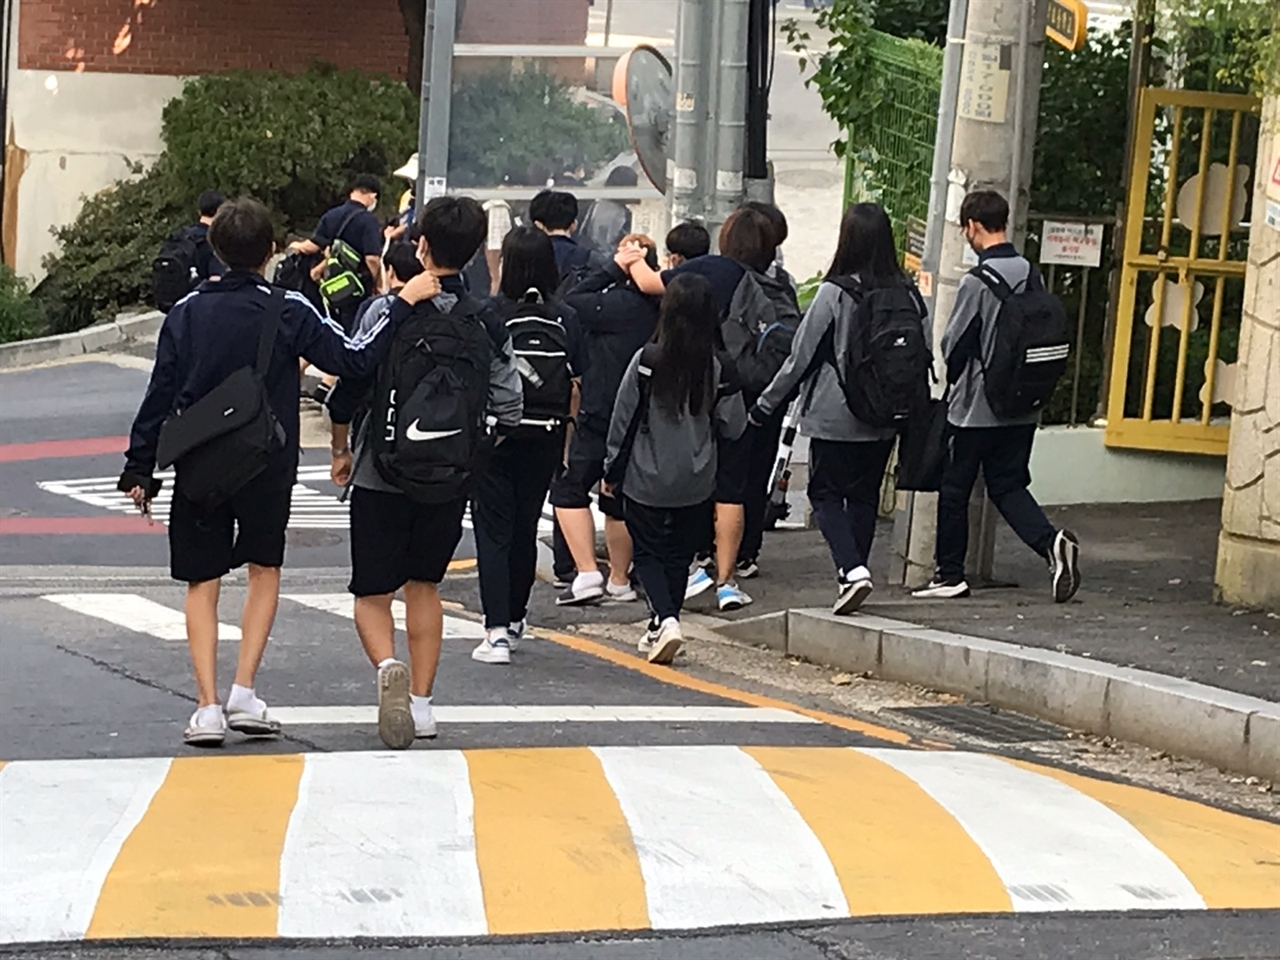 선생님들의 은근한 압력과 주변의 시선에 어쩔 수 없이 거무튀튀한 티셔츠만 주구장창 입고 있는 거라고 한다. 사진은 하교하는 학생들 모습. 